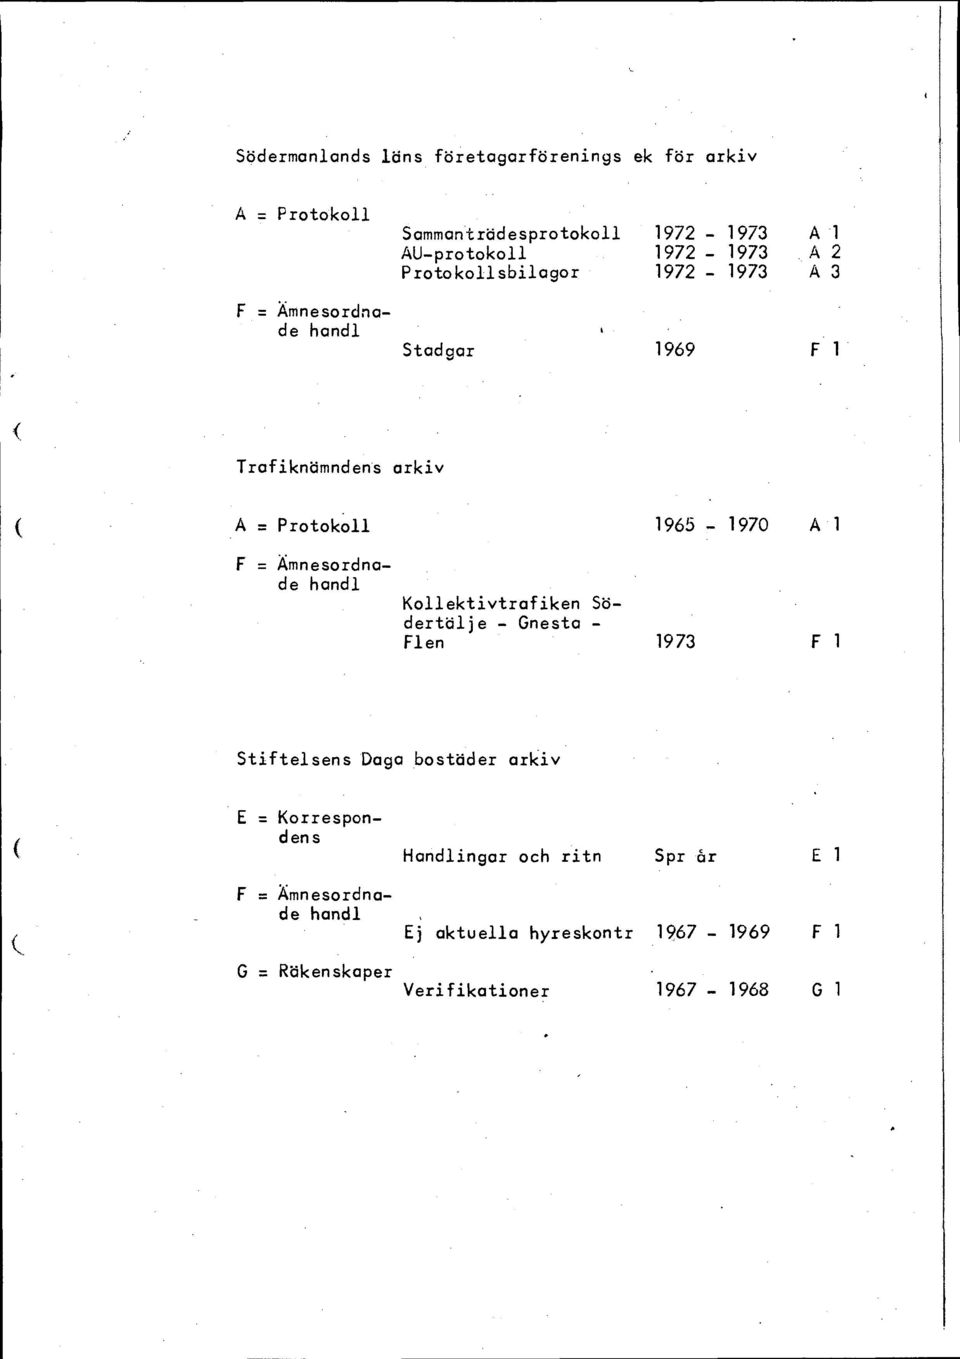 Protokoll 1965 7 1970 A 1 Kollektivtrafiken Södertälje - Gnesta - Flen 1973 F 1 Stiftelsens Daga bostäder